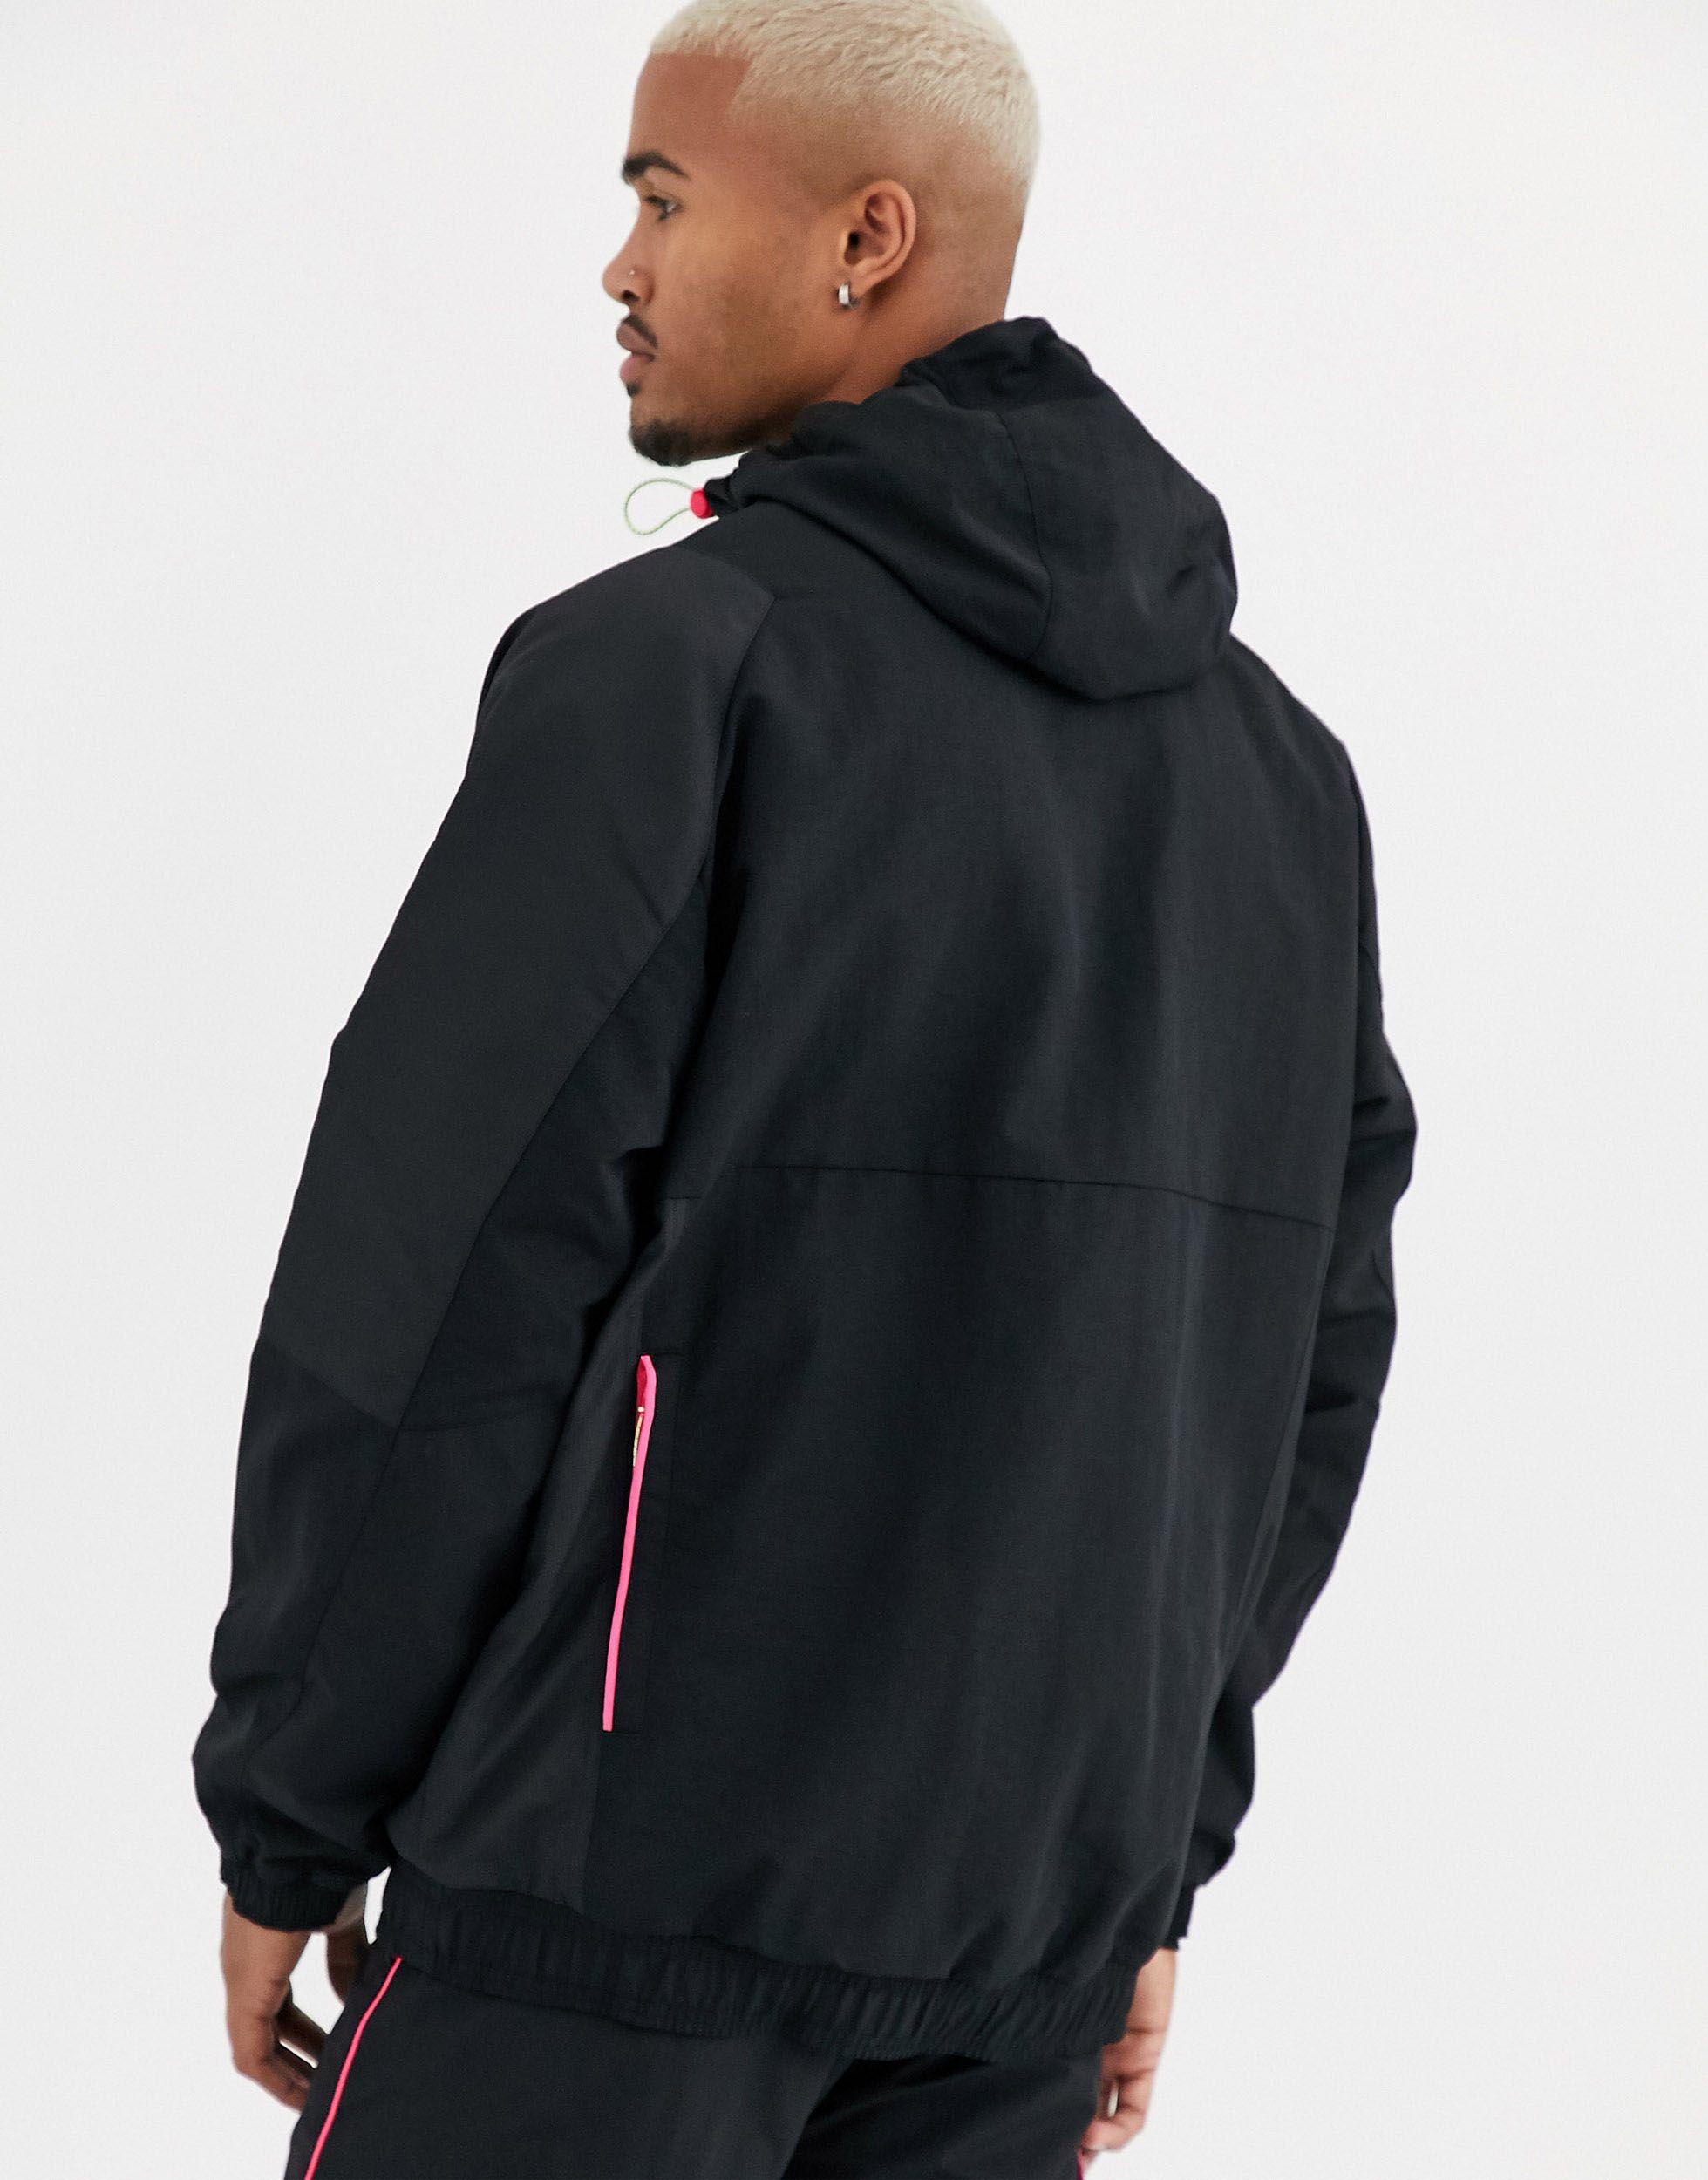 adidas originals adiplore half zip jacket with hood in black